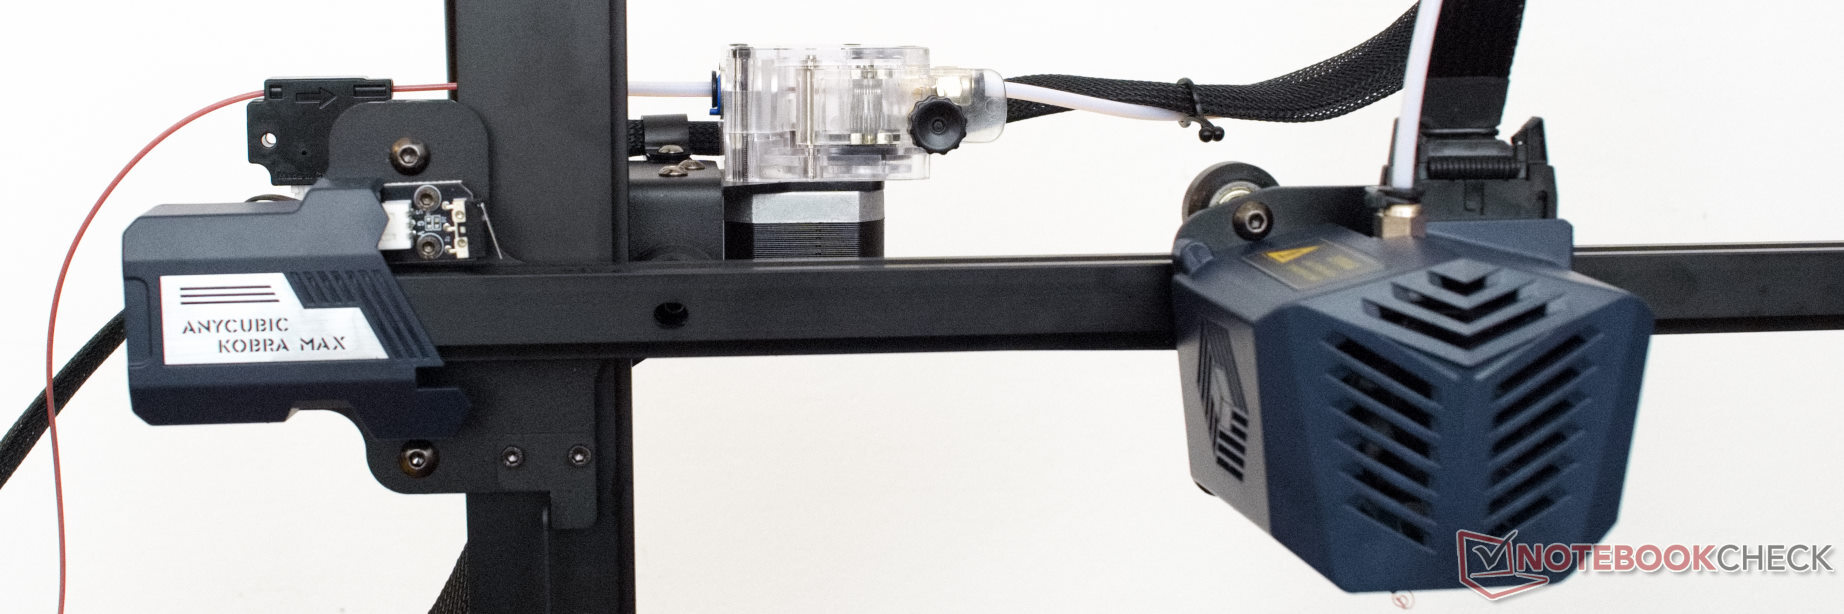 Test della stampante 3D Anycubic Kobra Max: Una stampante enorme per grandi  oggetti 3D 